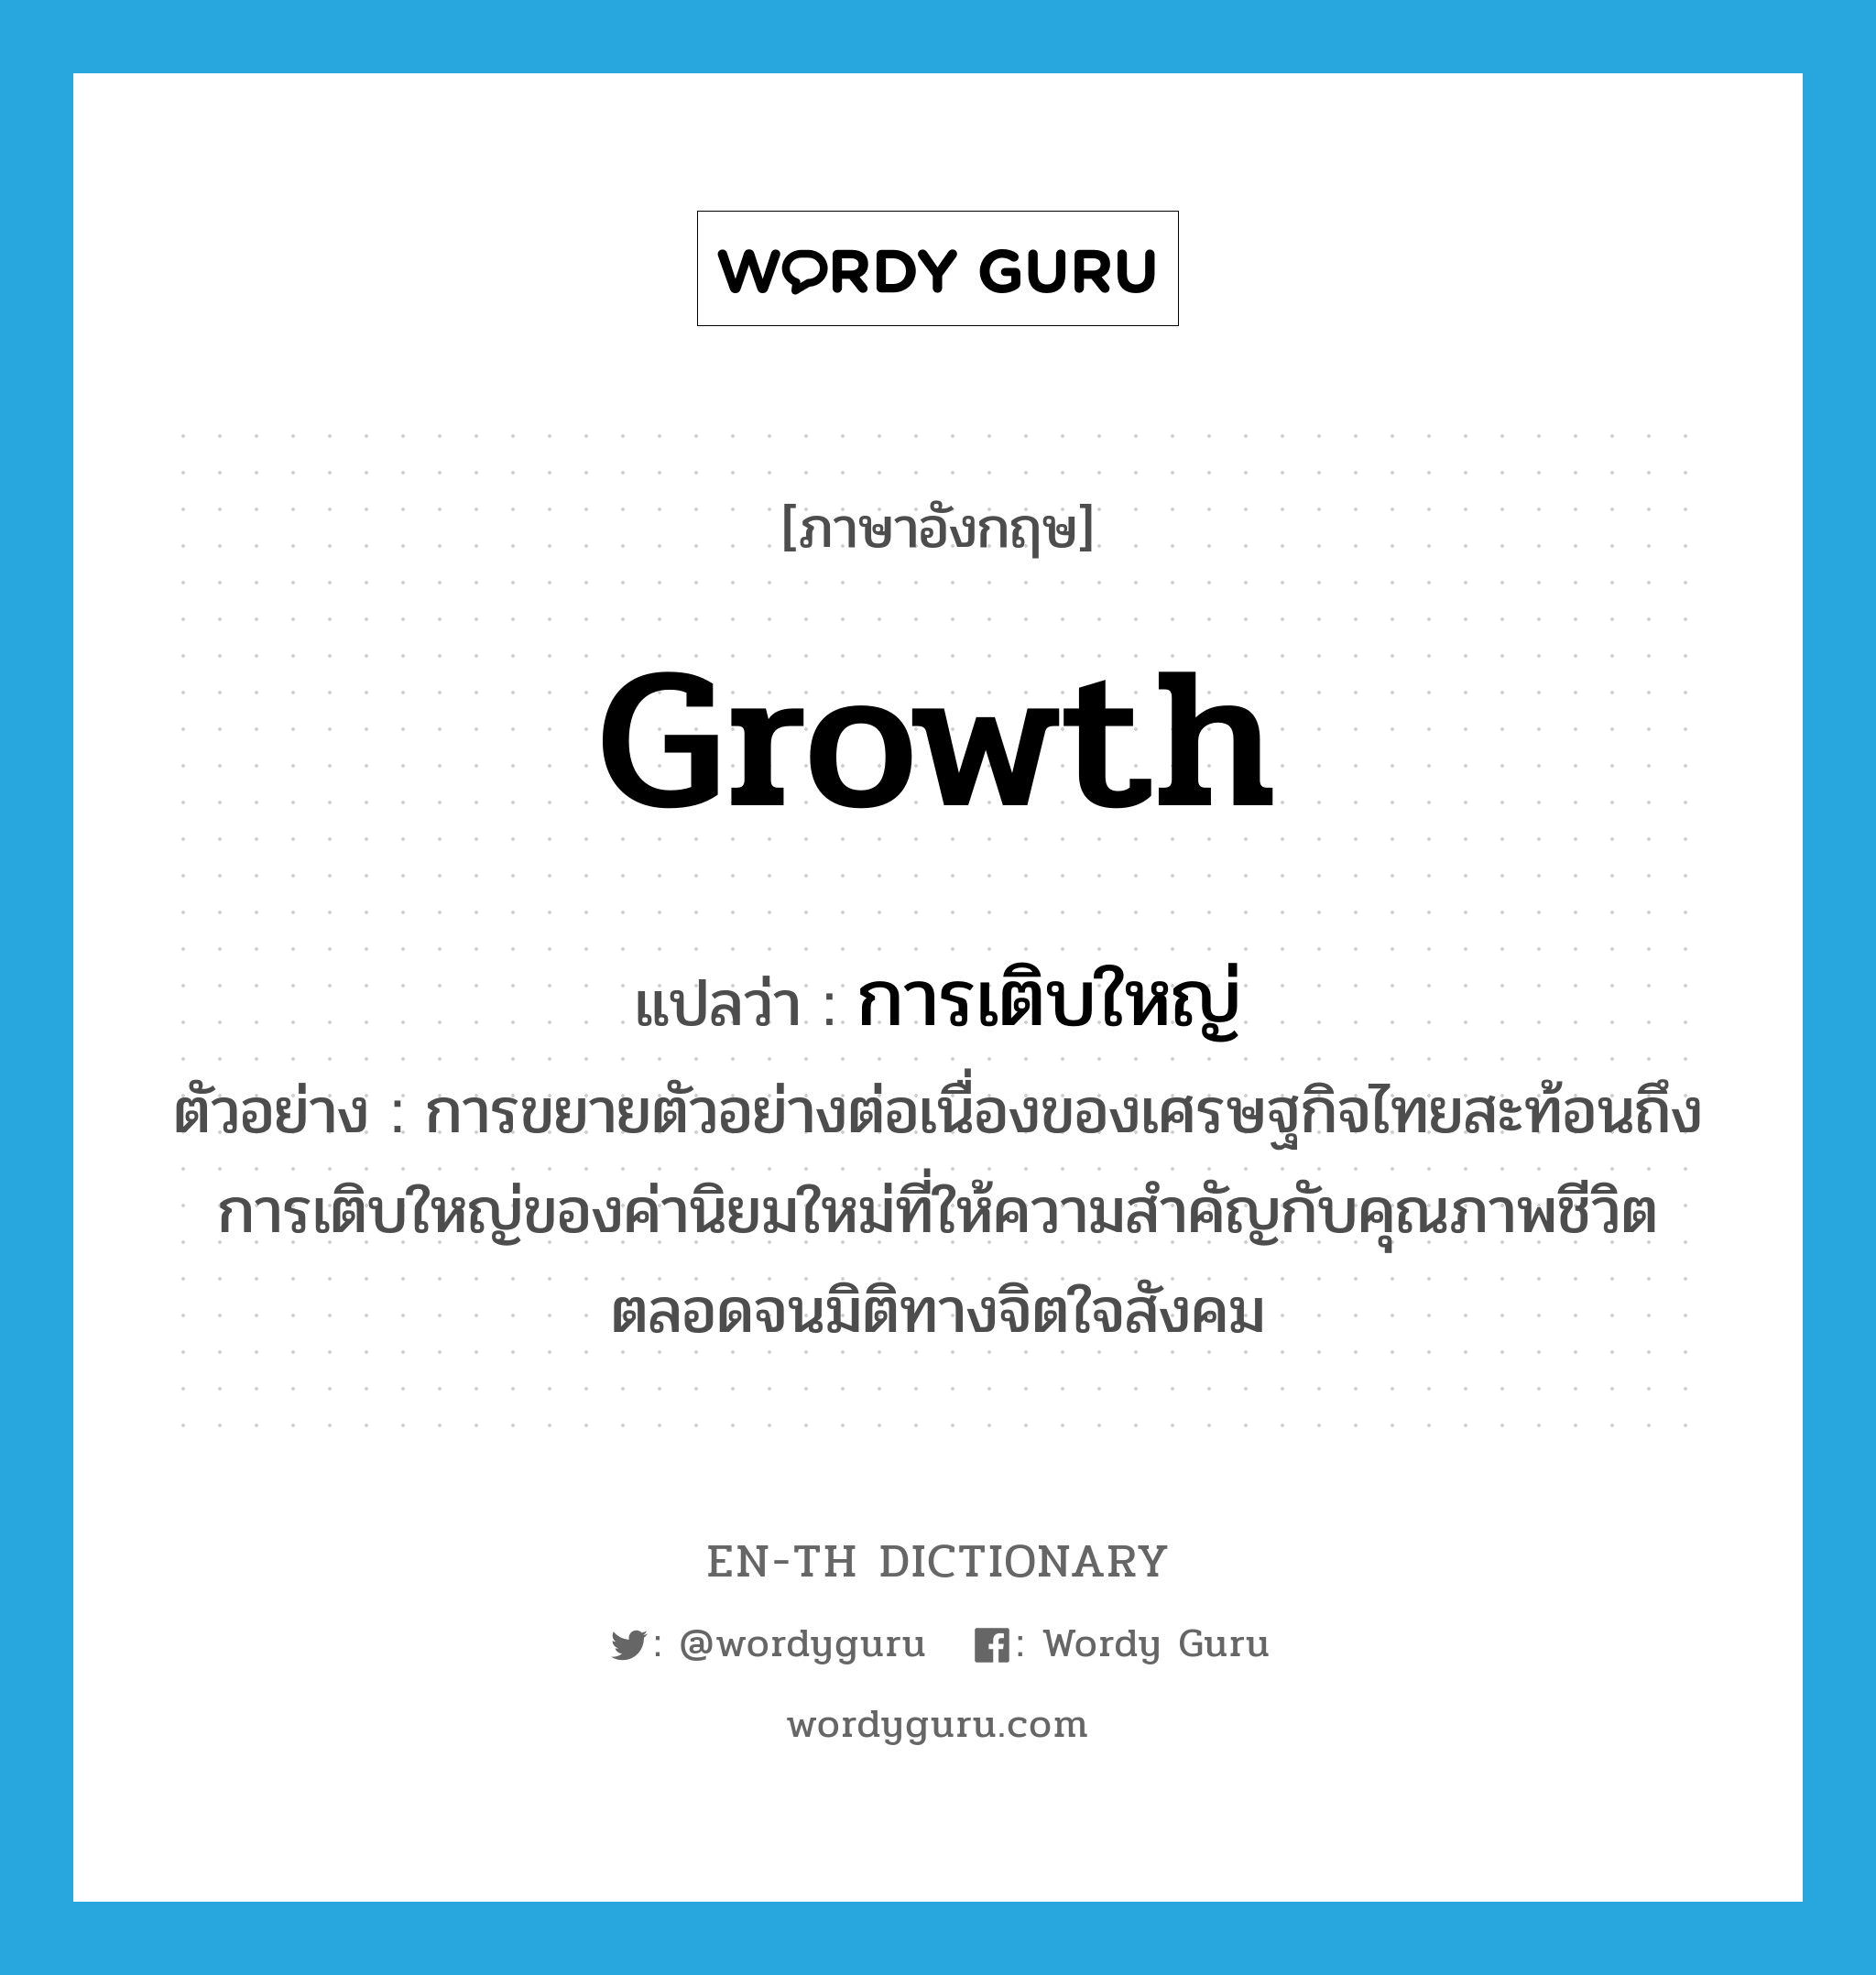 การเติบใหญ่ ภาษาอังกฤษ?, คำศัพท์ภาษาอังกฤษ การเติบใหญ่ แปลว่า growth ประเภท N ตัวอย่าง การขยายตัวอย่างต่อเนื่องของเศรษฐกิจไทยสะท้อนถึงการเติบใหญ่ของค่านิยมใหม่ที่ให้ความสำคัญกับคุณภาพชีวิตตลอดจนมิติทางจิตใจสังคม หมวด N